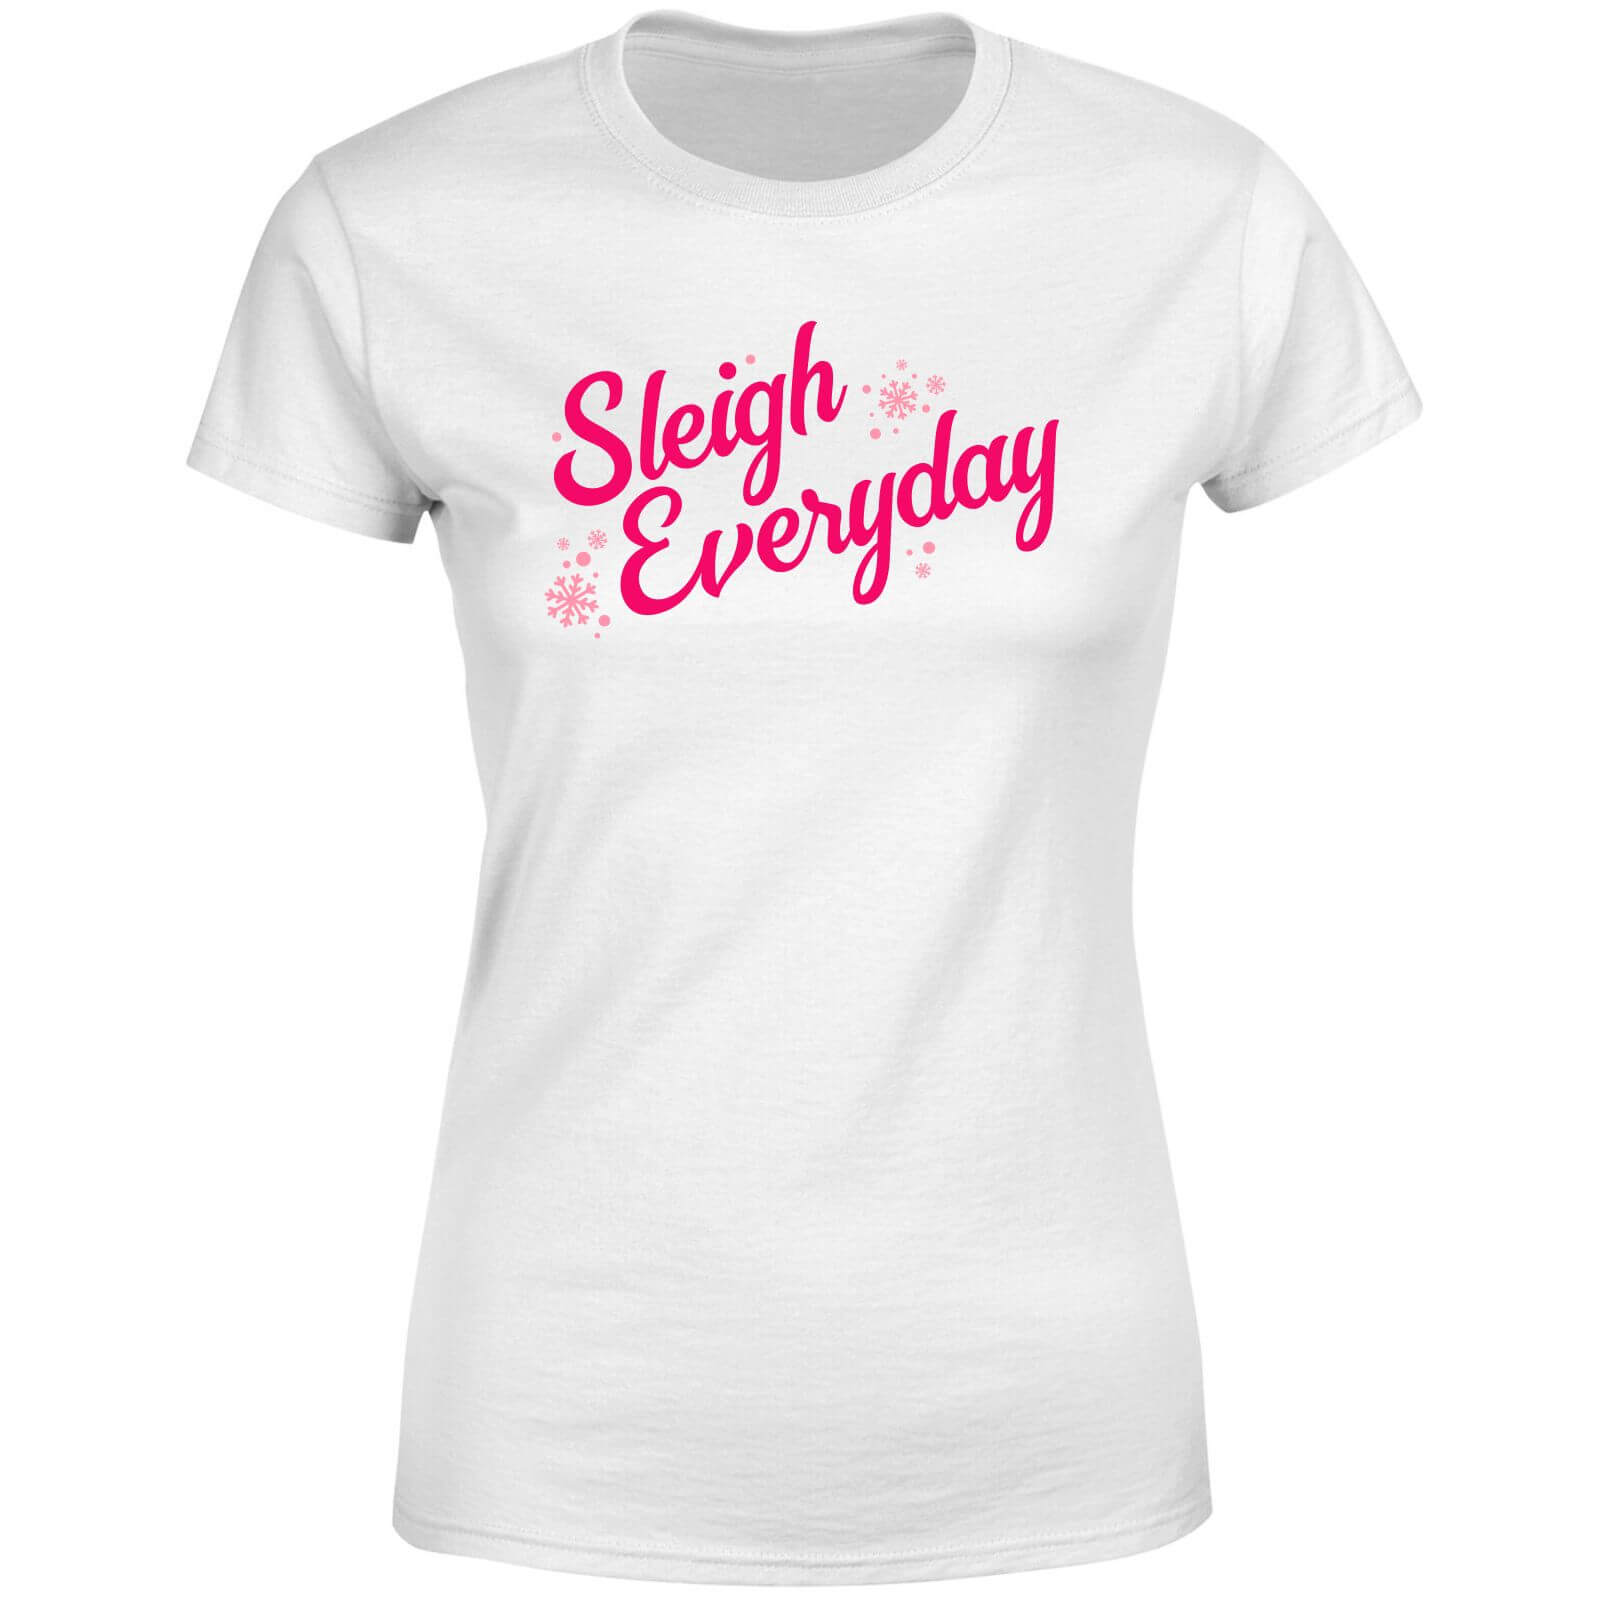 Snowy Sleigh Everyday Women's T-Shirt - White - XS - White